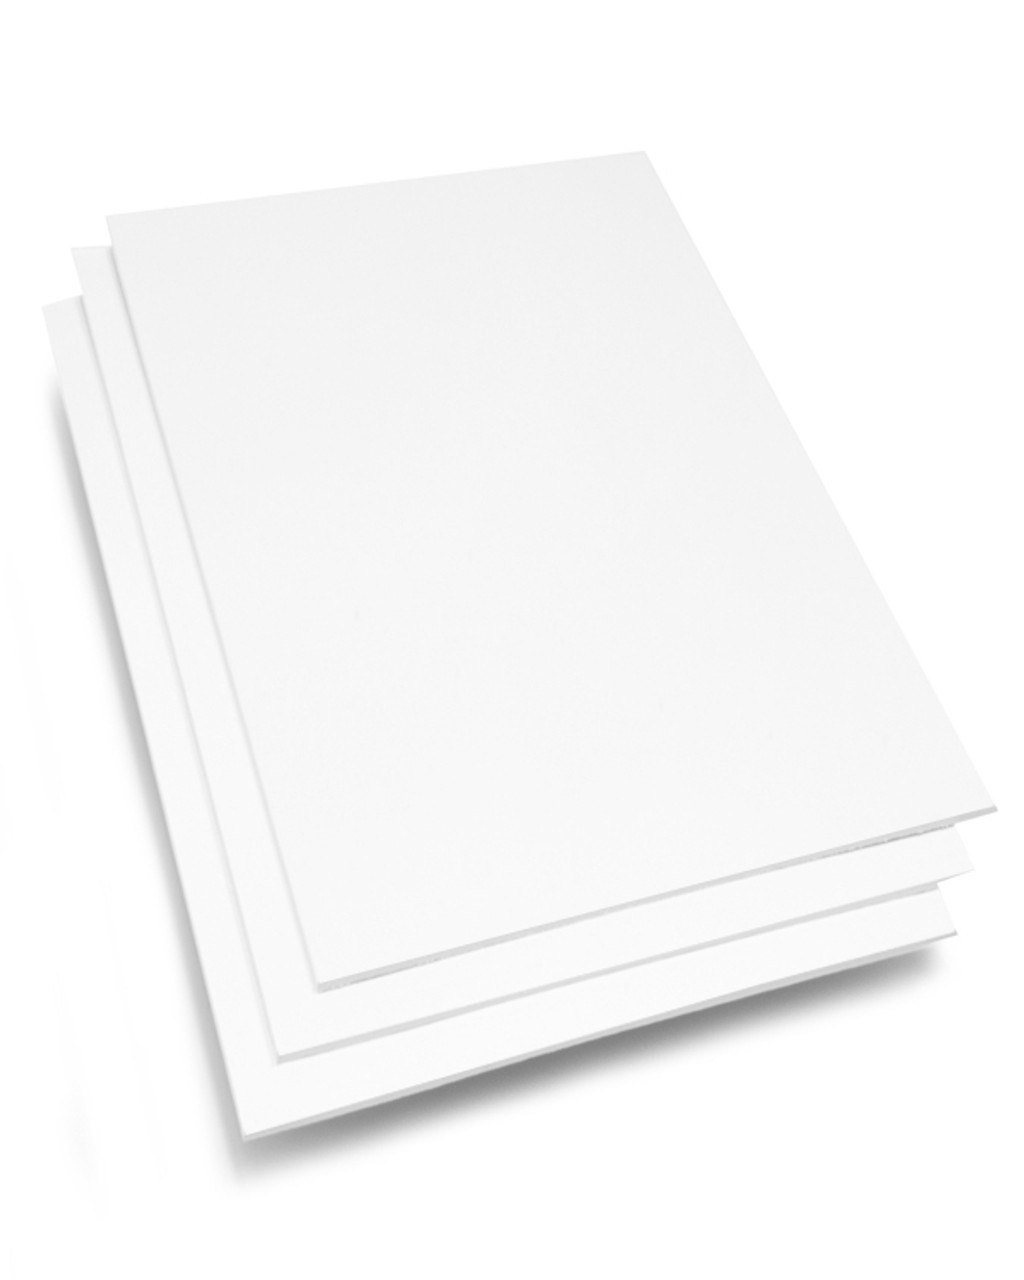 White Foam Board (Standard Sizes)